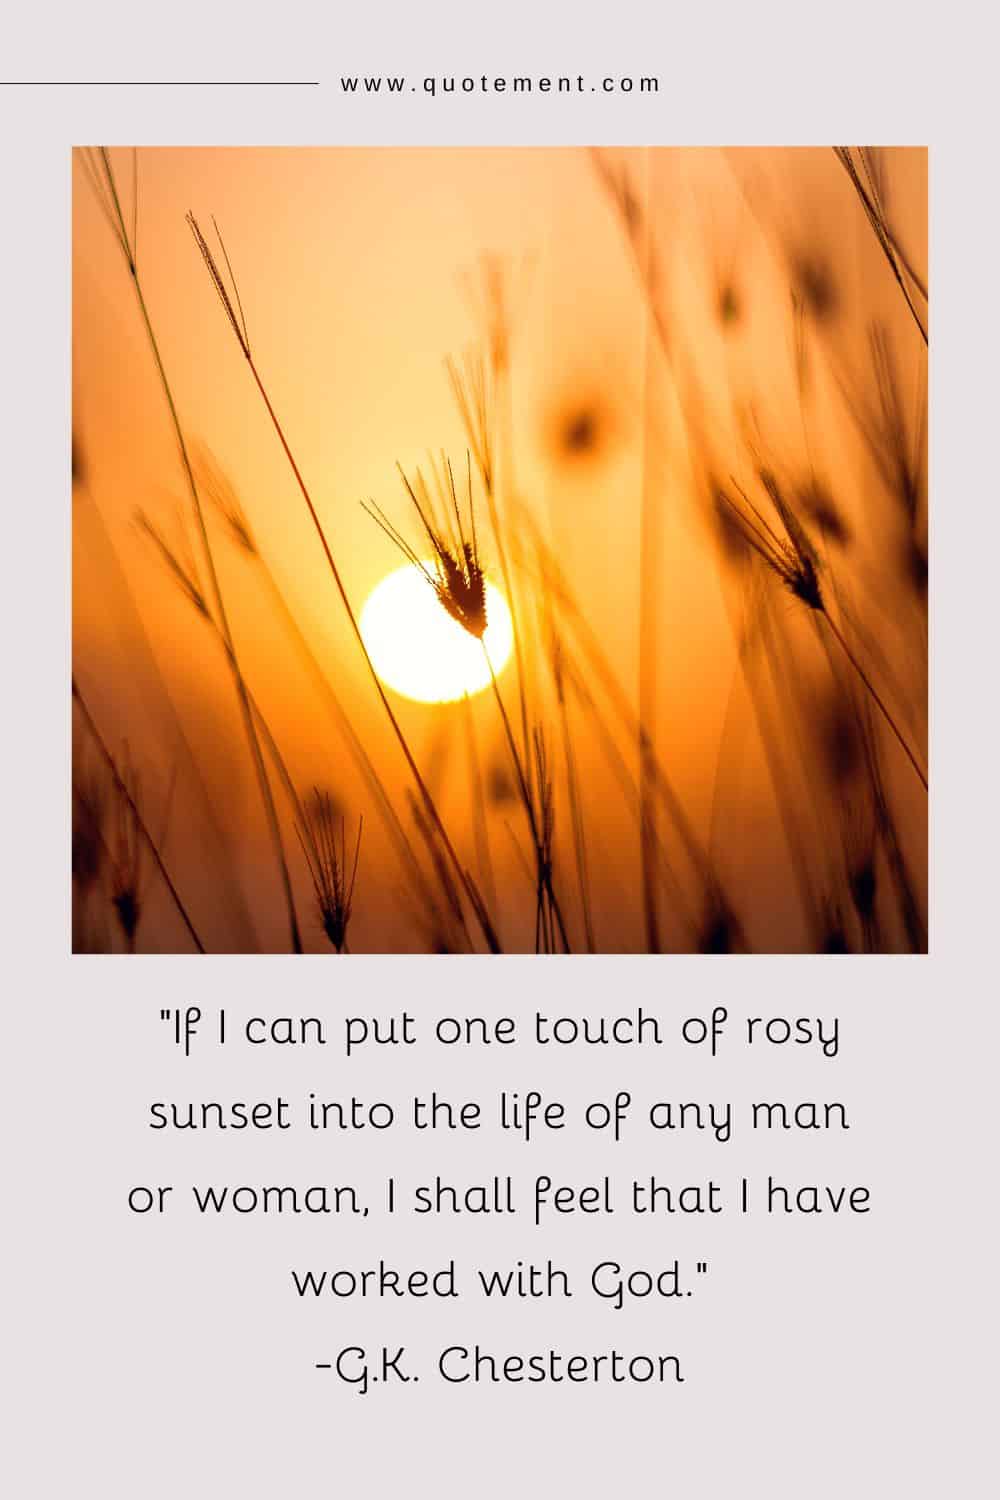 Si puedo poner un toque de sol rosado en la vida de cualquier hombre o mujer, sentiré que he trabajado con Dios.